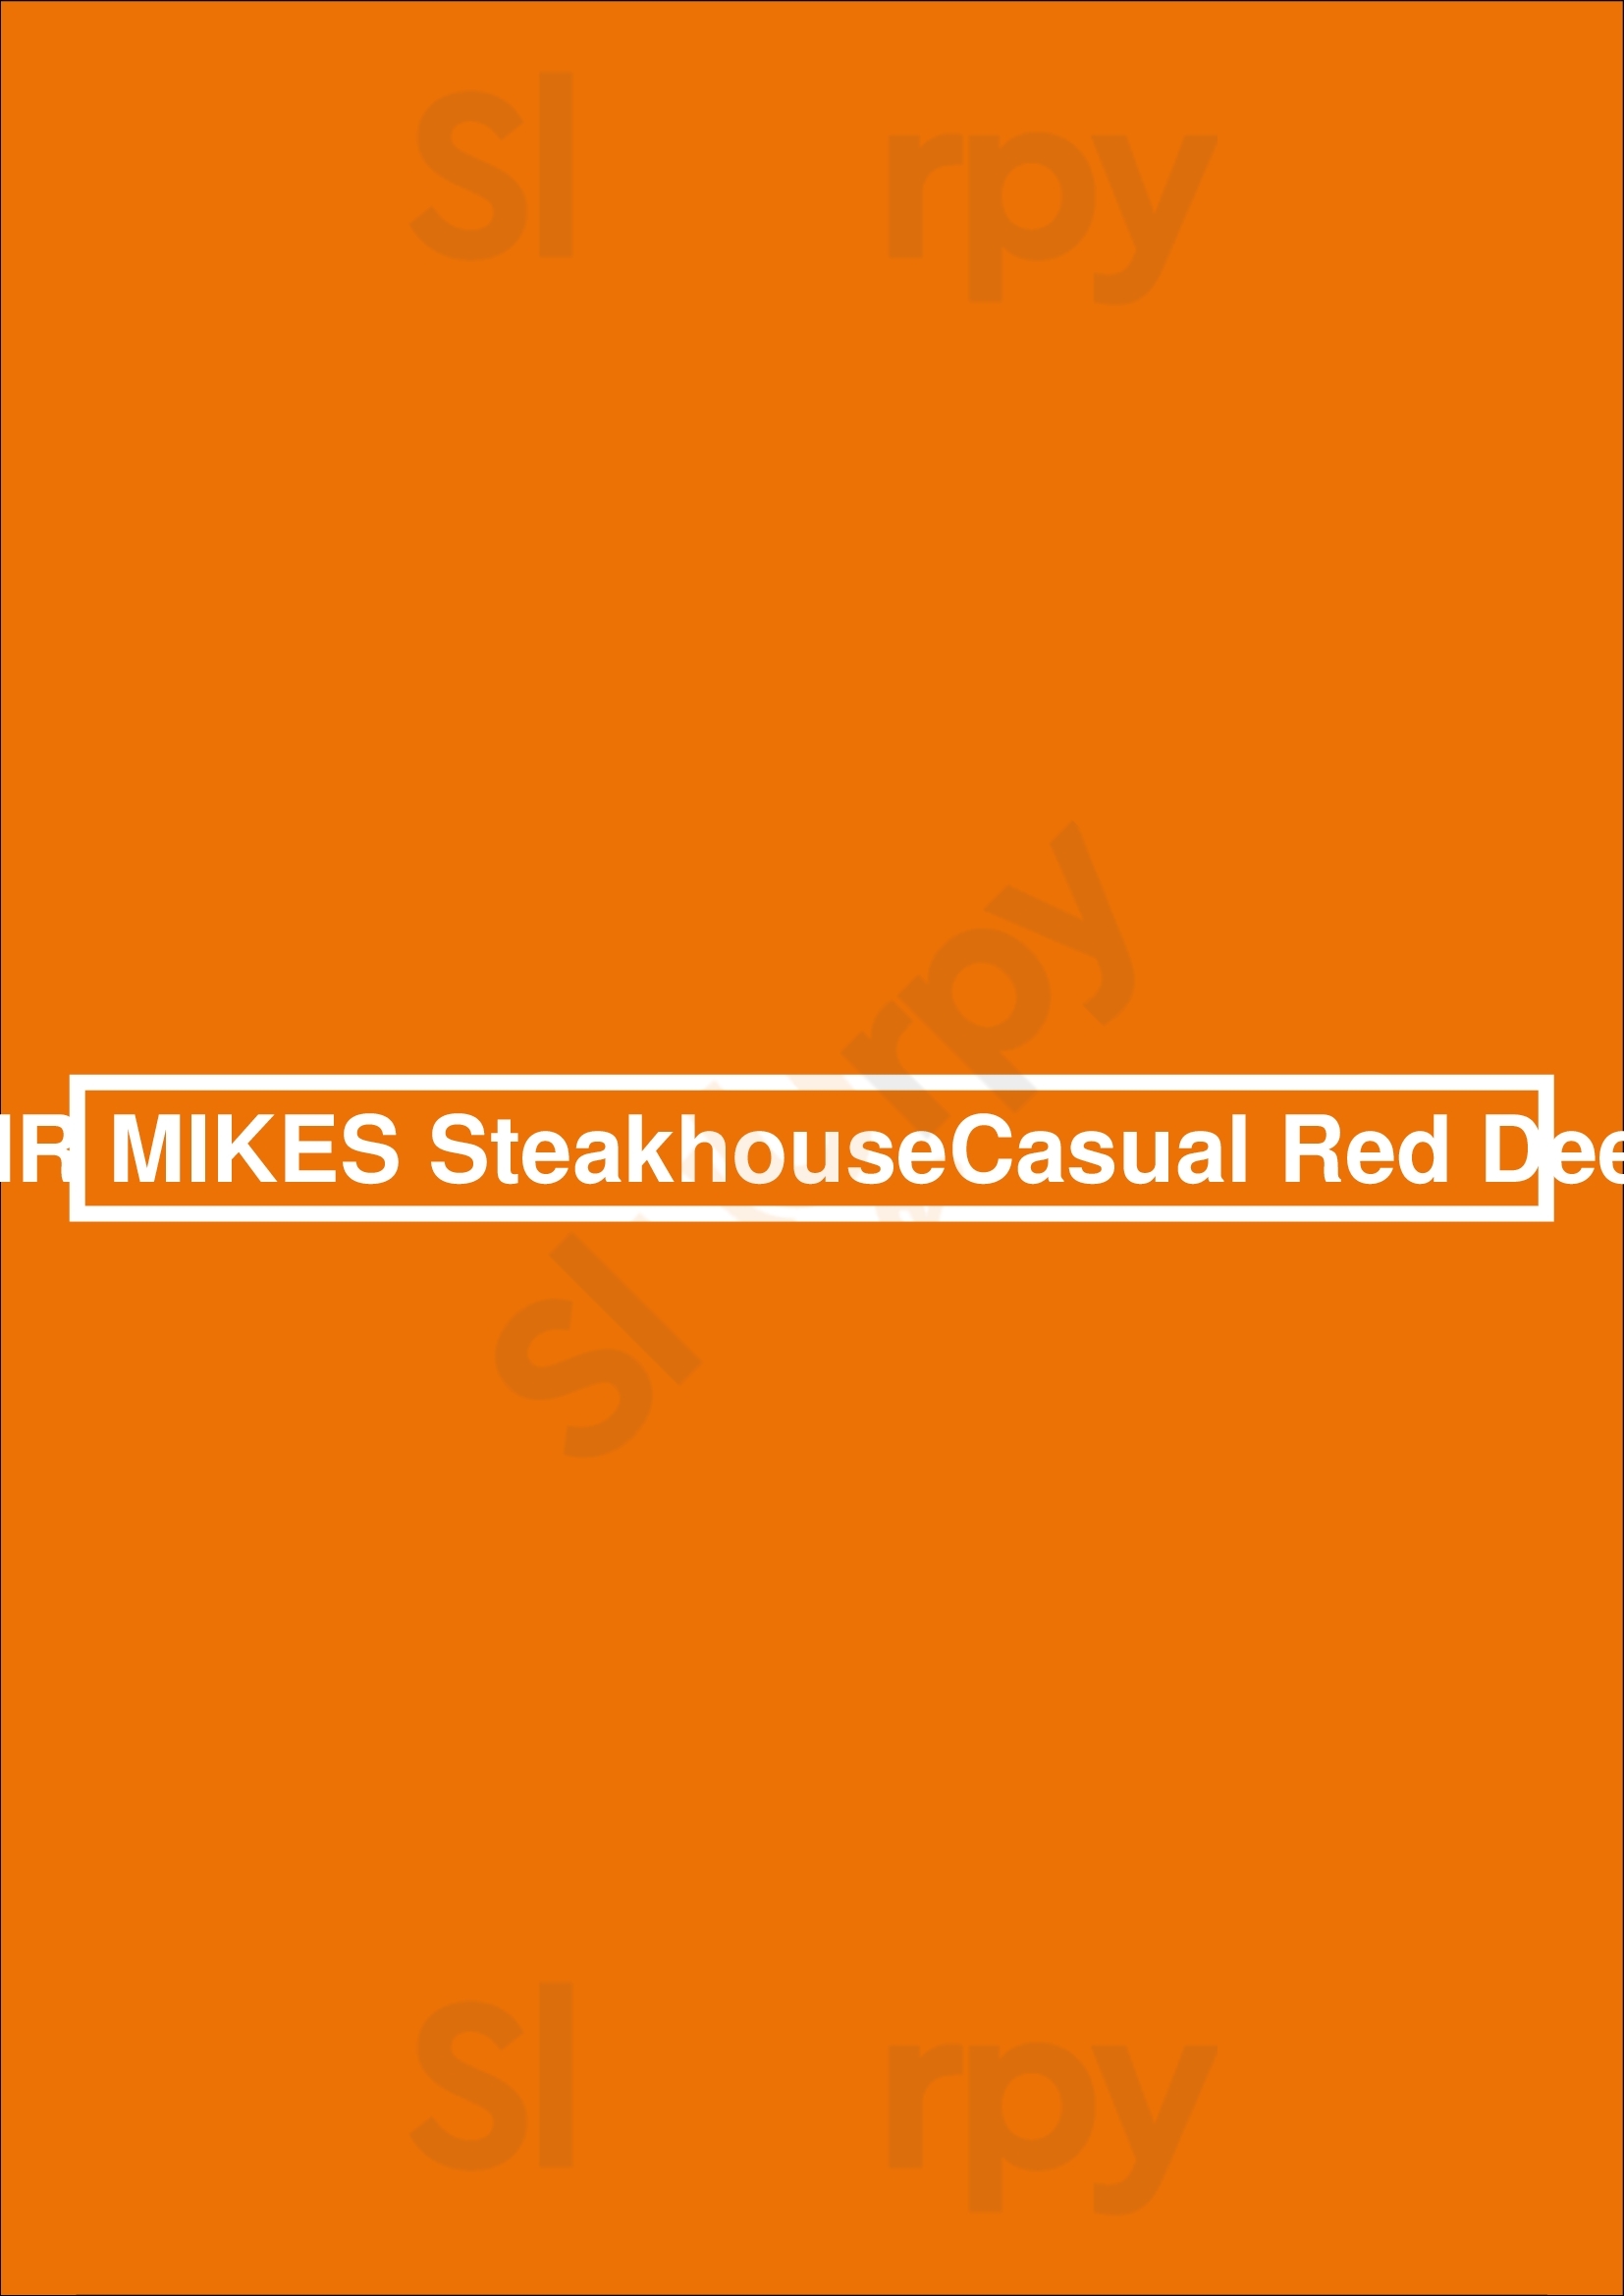 Mr Mikes Steakhouse Casual Red Deer Red Deer Menu - 1